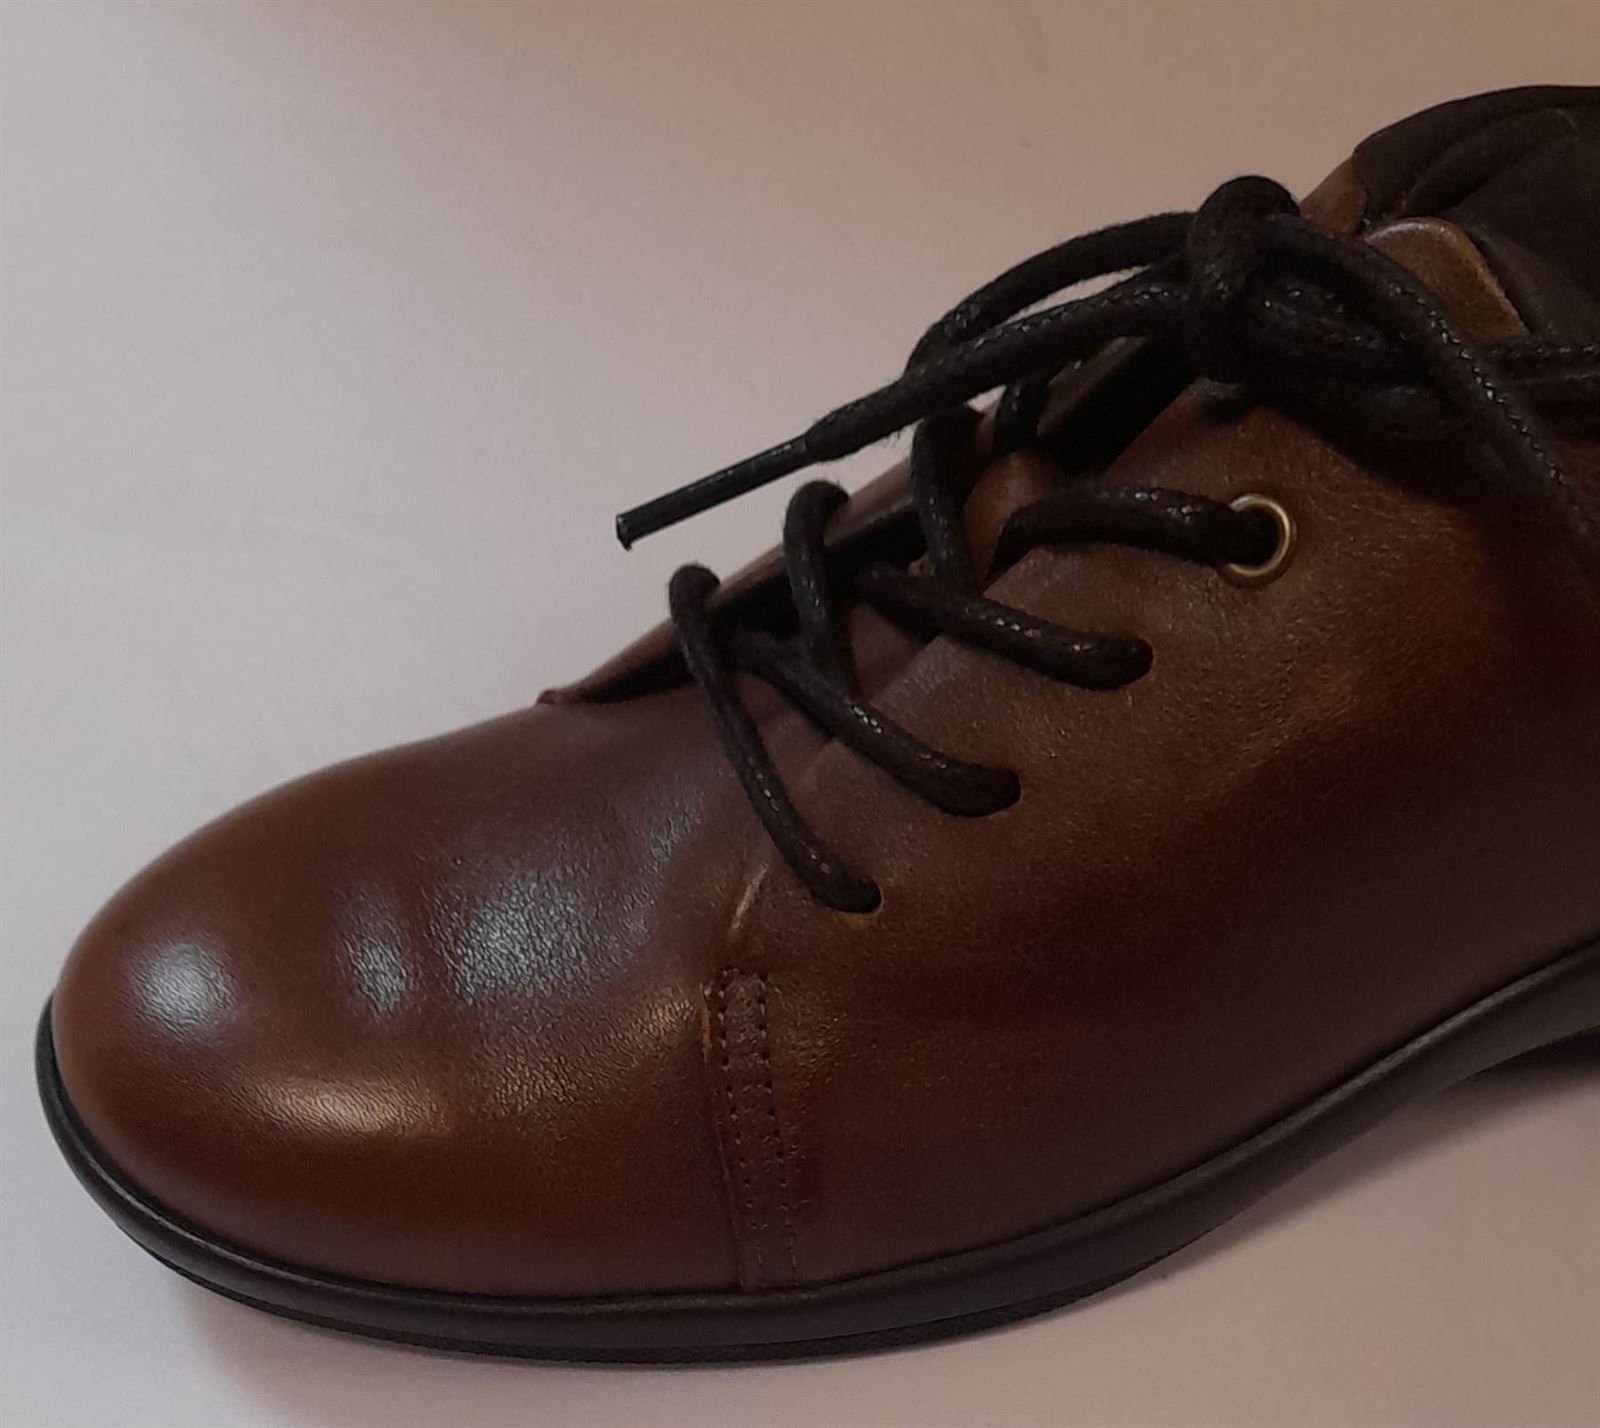 Zapato Fiordland marrón - Imagen 4